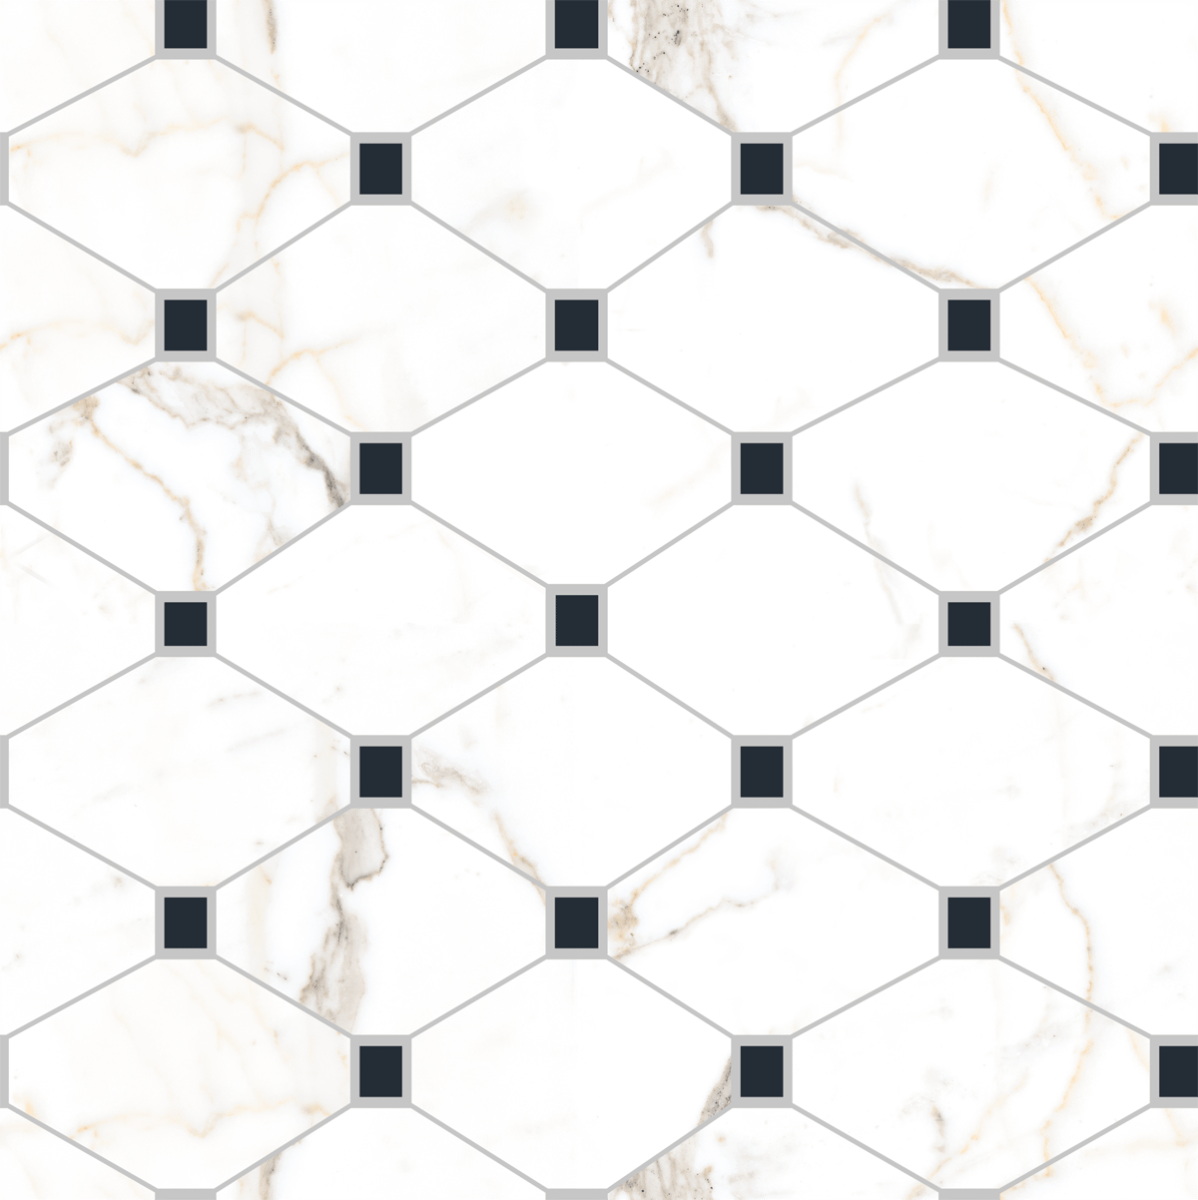 Digital Glazed Vitrified Tiles for Living Room Tiles, Kitchen Tiles, Bedroom Tiles, Accent Tiles, Office Tiles, Bar Tiles, Restaurant Tiles, Hospital Tiles, Bar/Restaurant, Commercial/Office